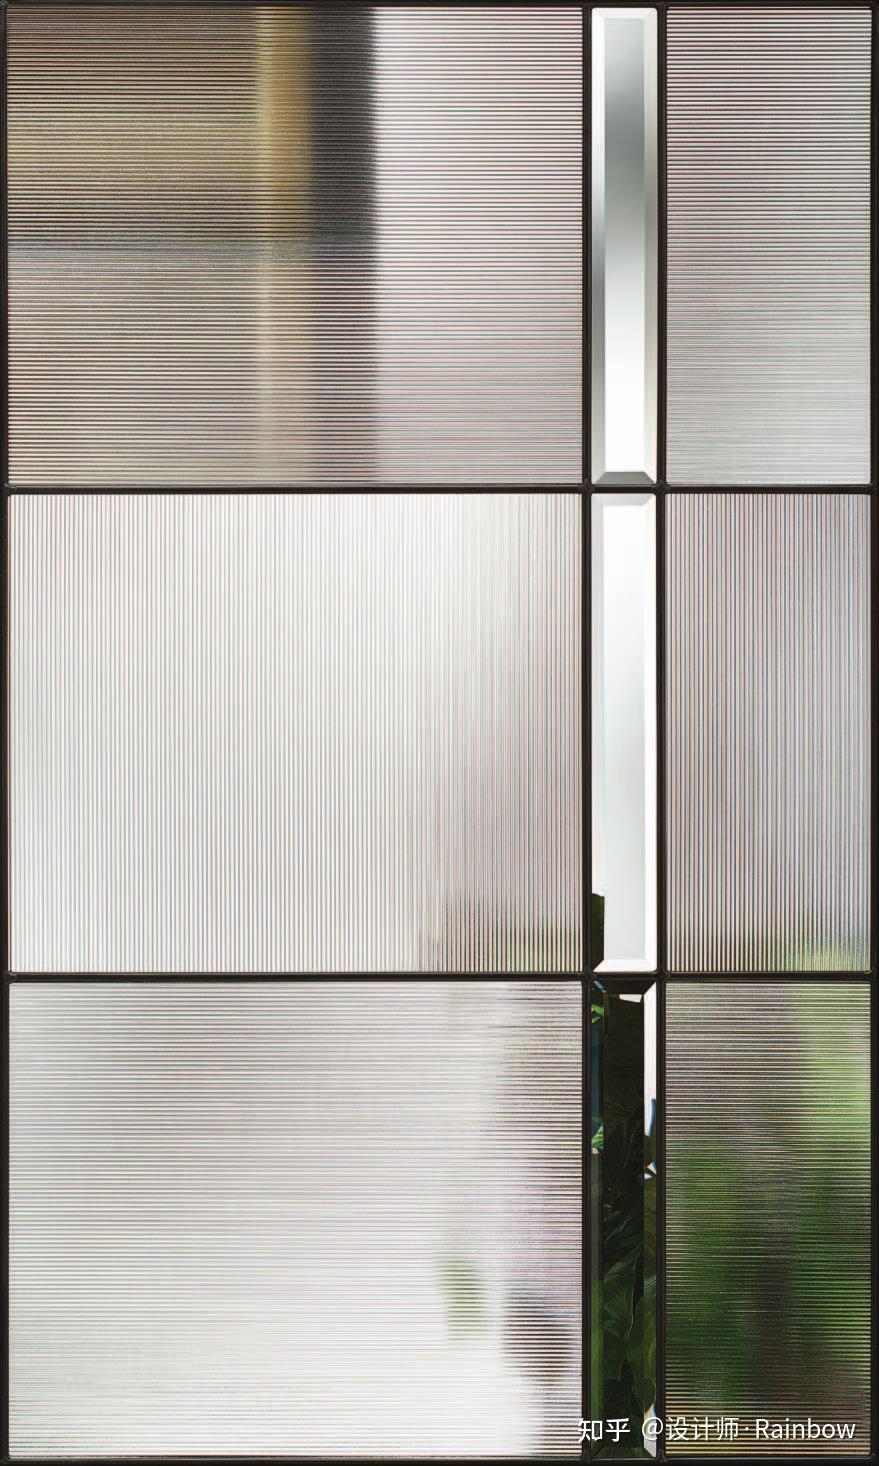 具有其它透明玻璃一样的高透性,而且玻璃的漫反射和折射会让室内空间